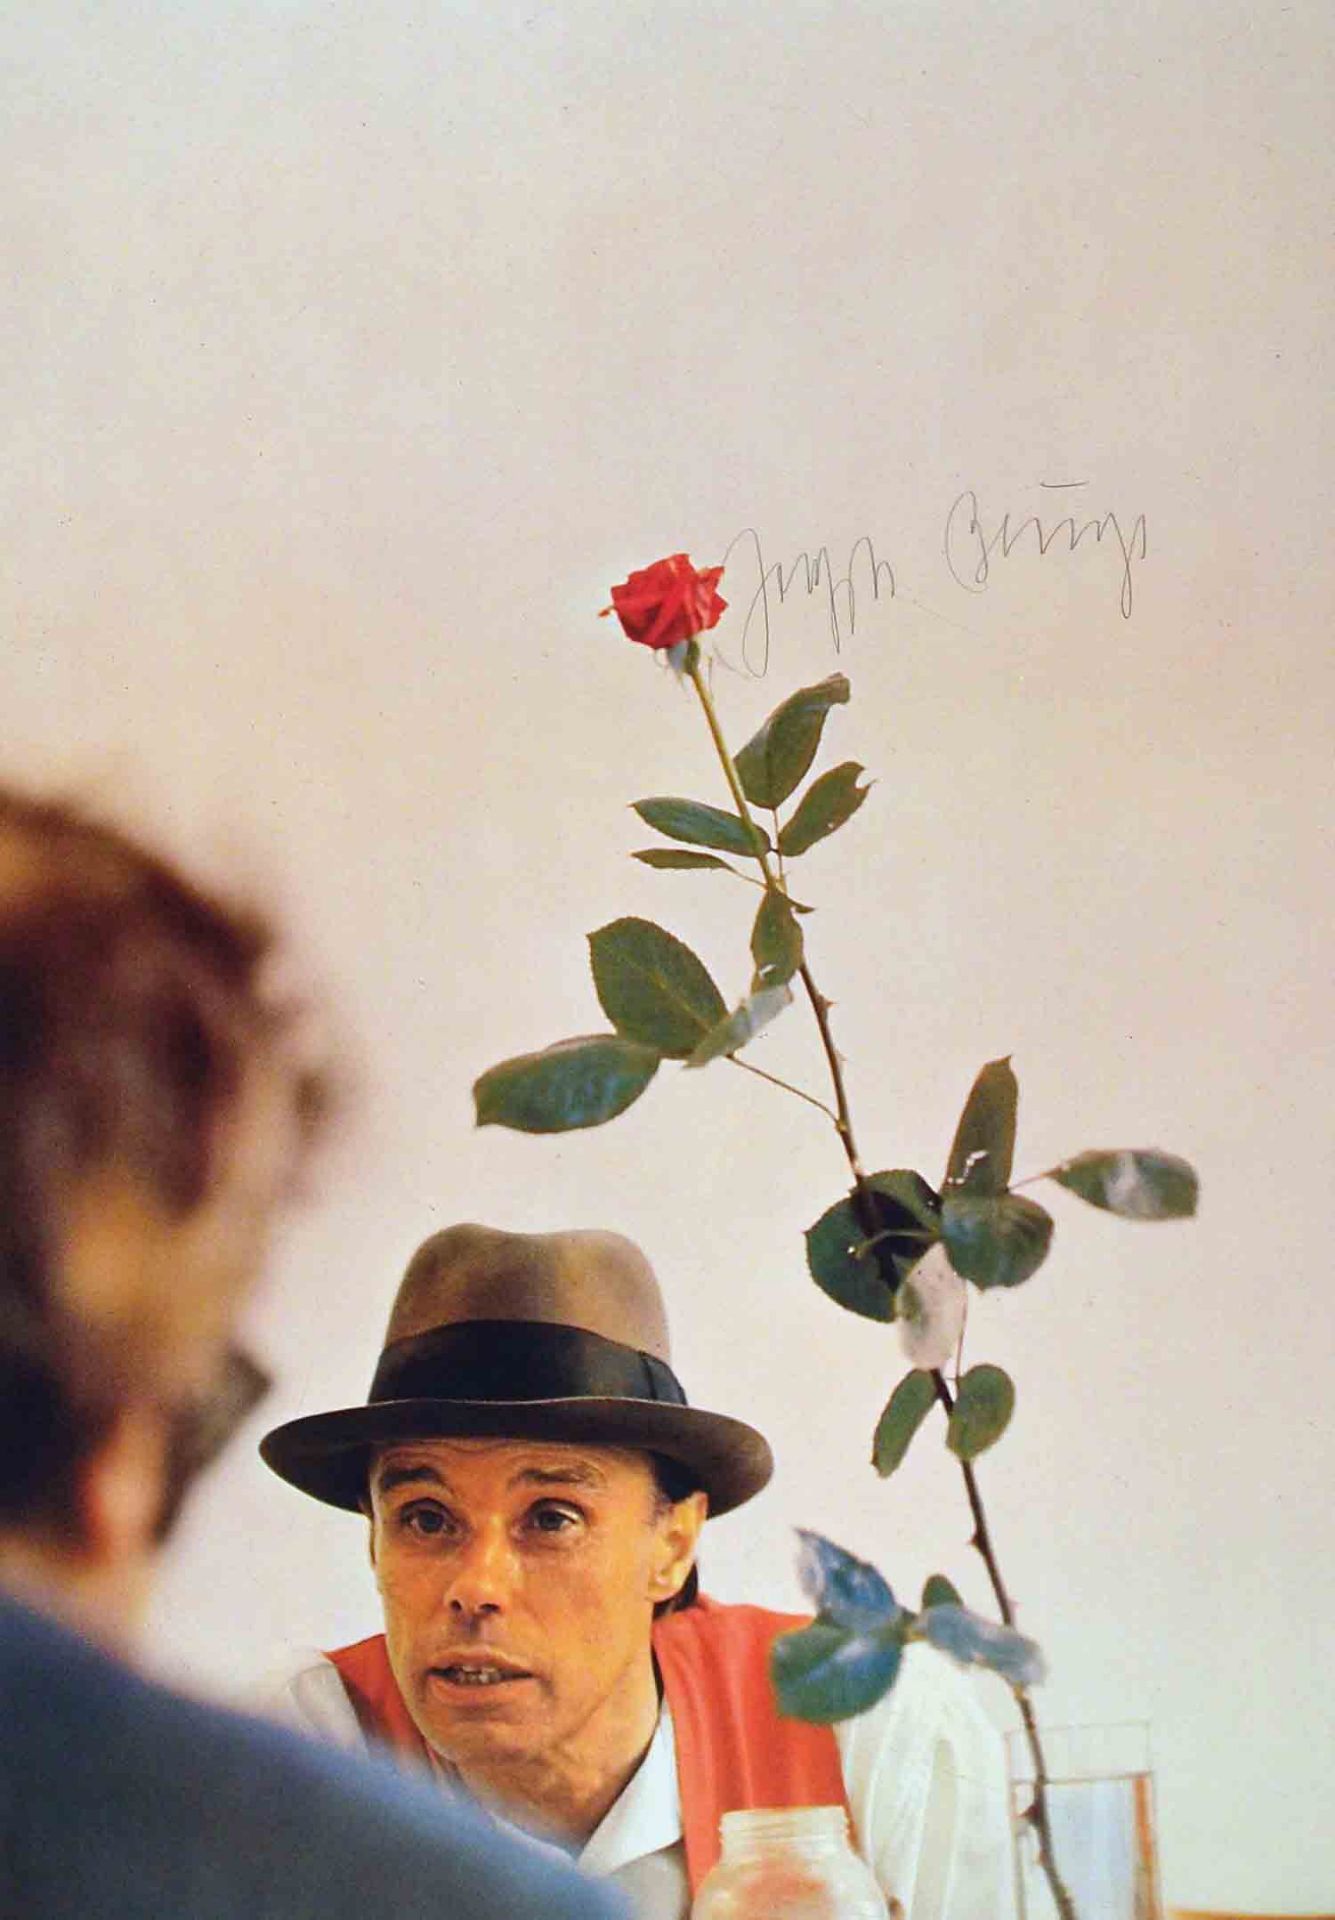 Joseph Beuys Krefeld 1921 - 1986 Düsseldorf Ohne die Rose tun wir’s nicht. Farboffset. 1972. 80 x